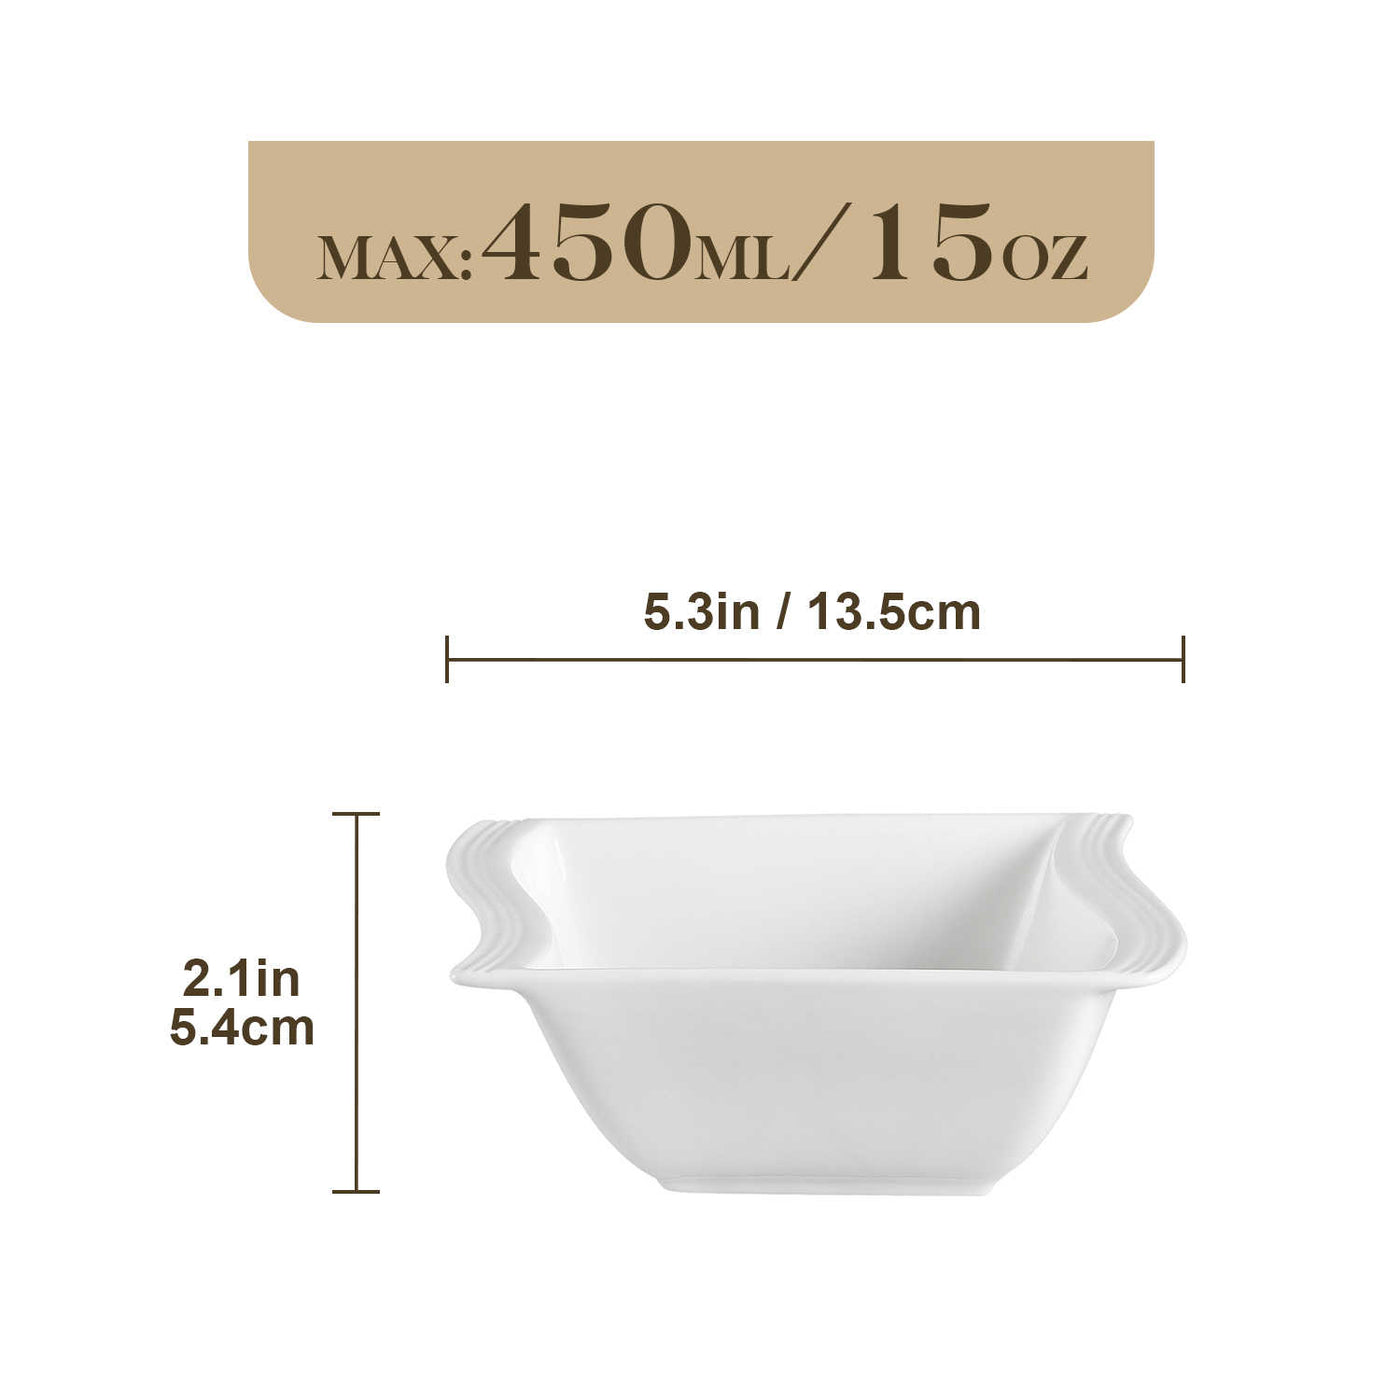 MALACASA Flora 6-Piece 11.2 oz. Elegant White Square Cereal Bowls